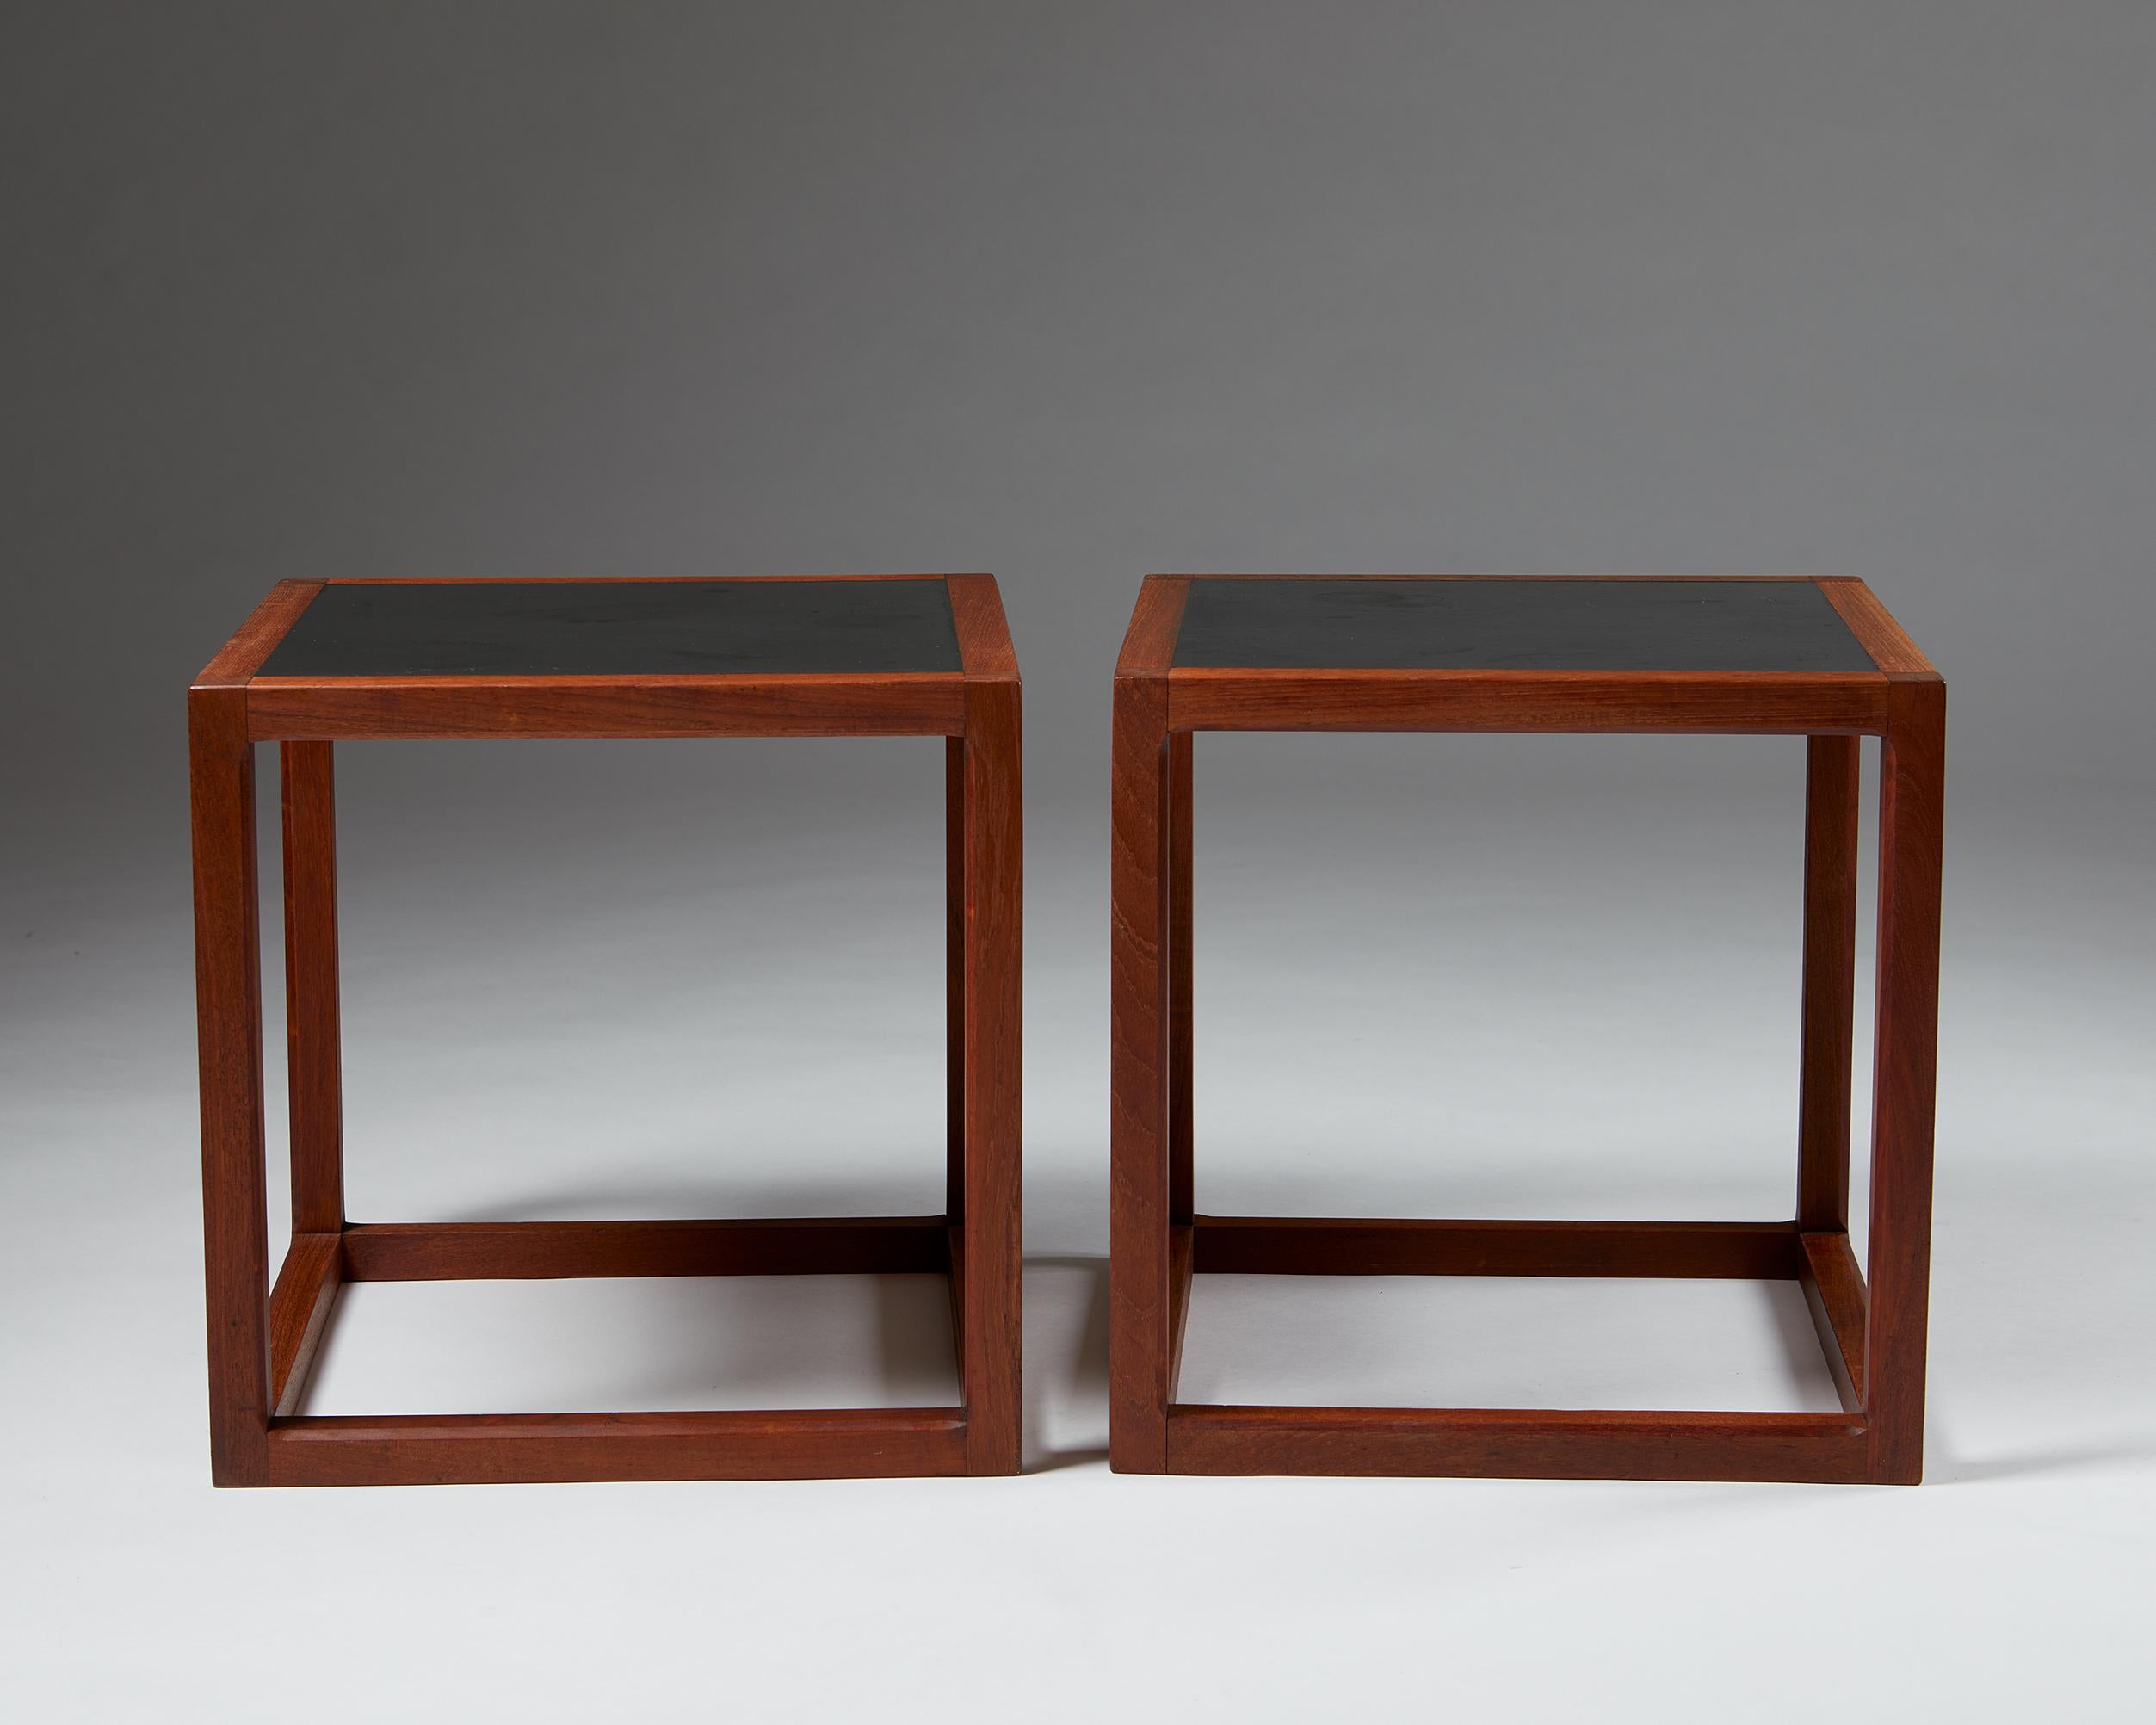 Danish Pair of Side Tables Designed by Kai Kristiansen for Aksel Kjersgaard